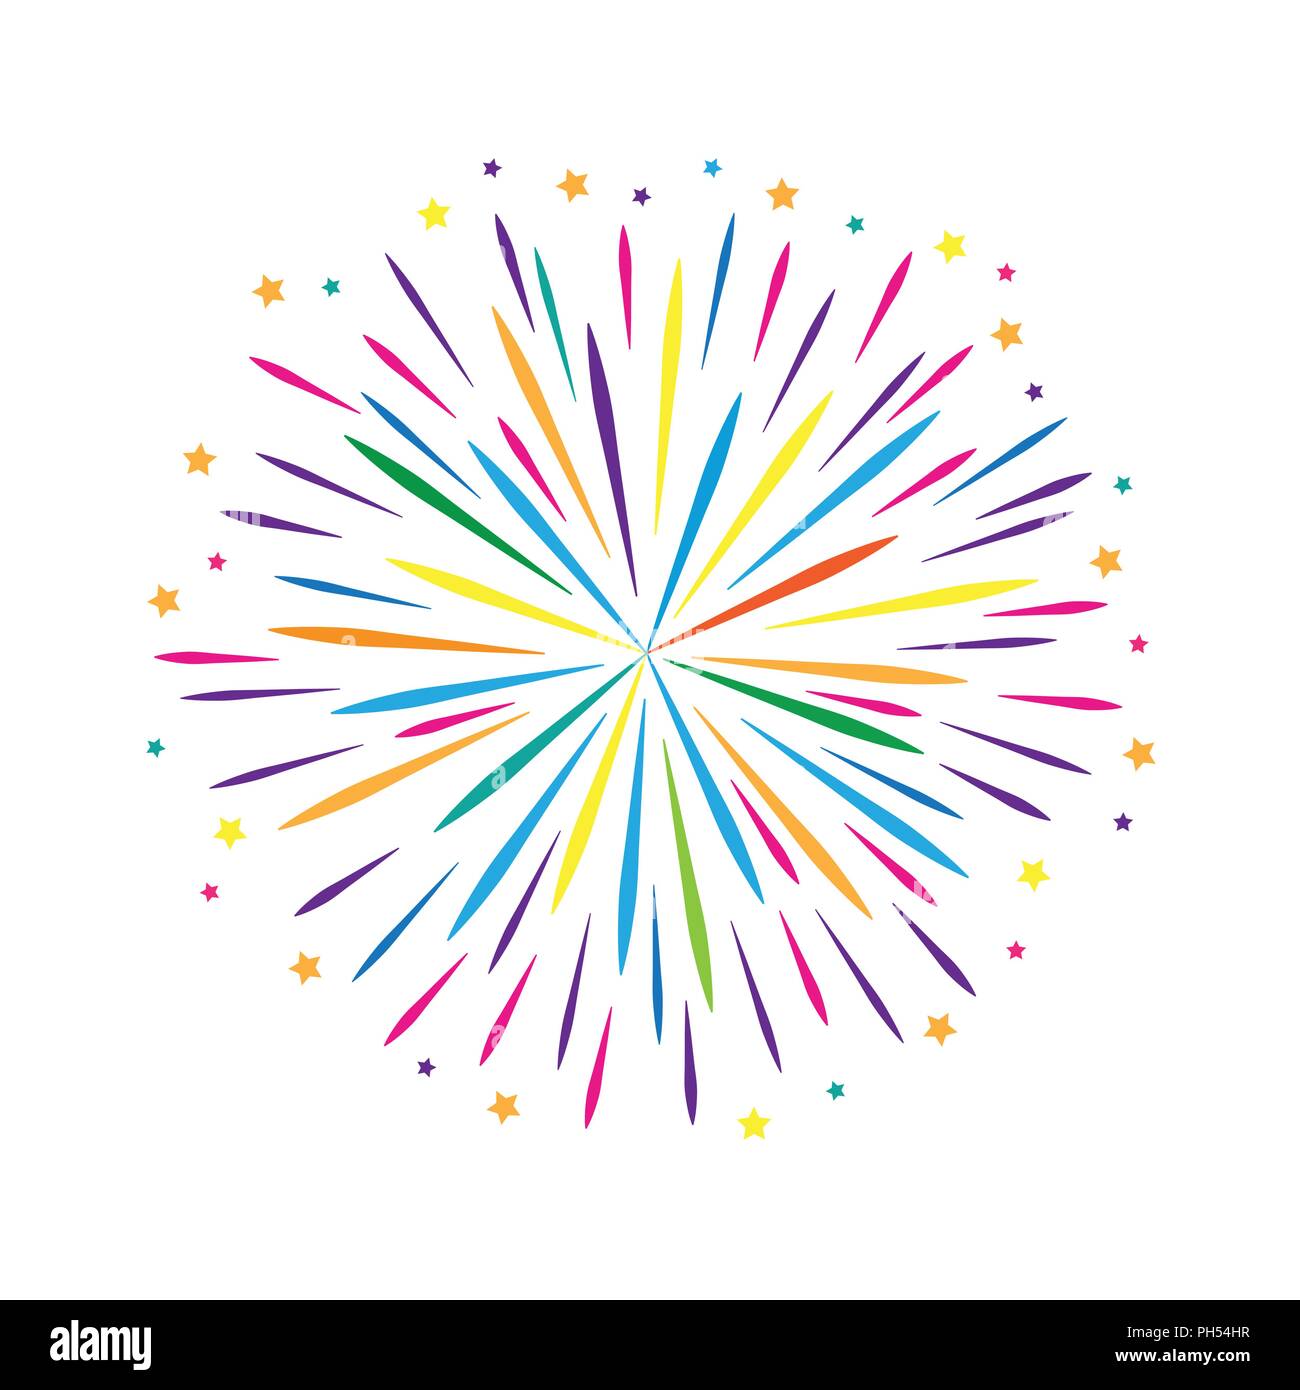 Buntes Feuerwerk design Sterne auf weißem Hintergrund Vektor-illustration EPS 10. Stock Vektor